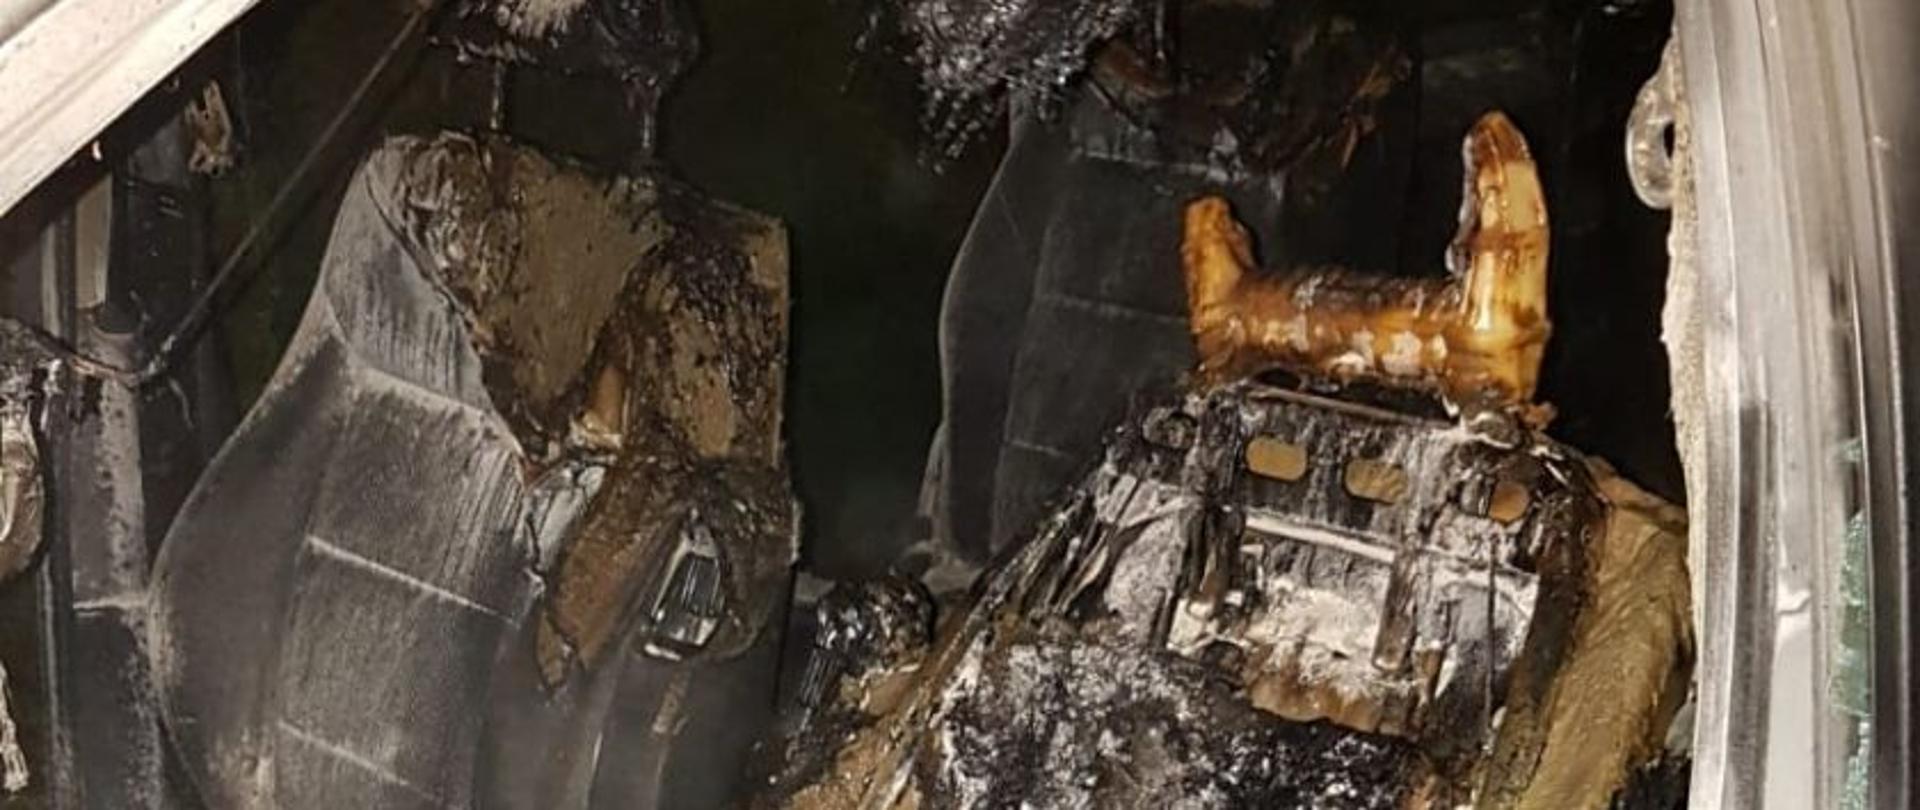 Na zdjęciu widać zniszczenia wnętrza pojazdu na skutek podpalenia. Całe wnętrze pojazdu jest uszkodzone.